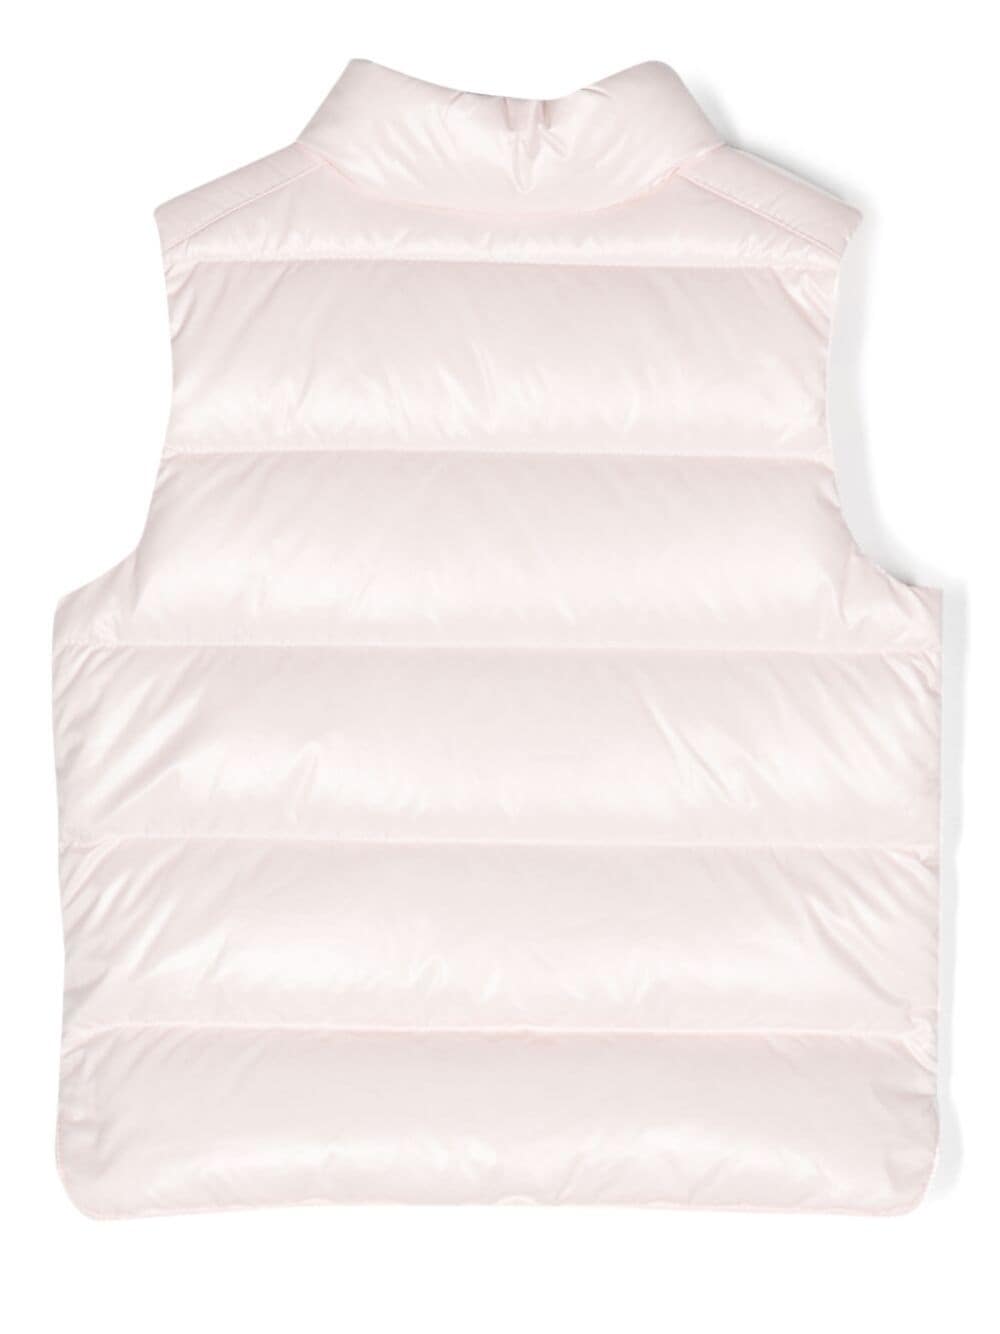 Light pink bernard vest for baby girl